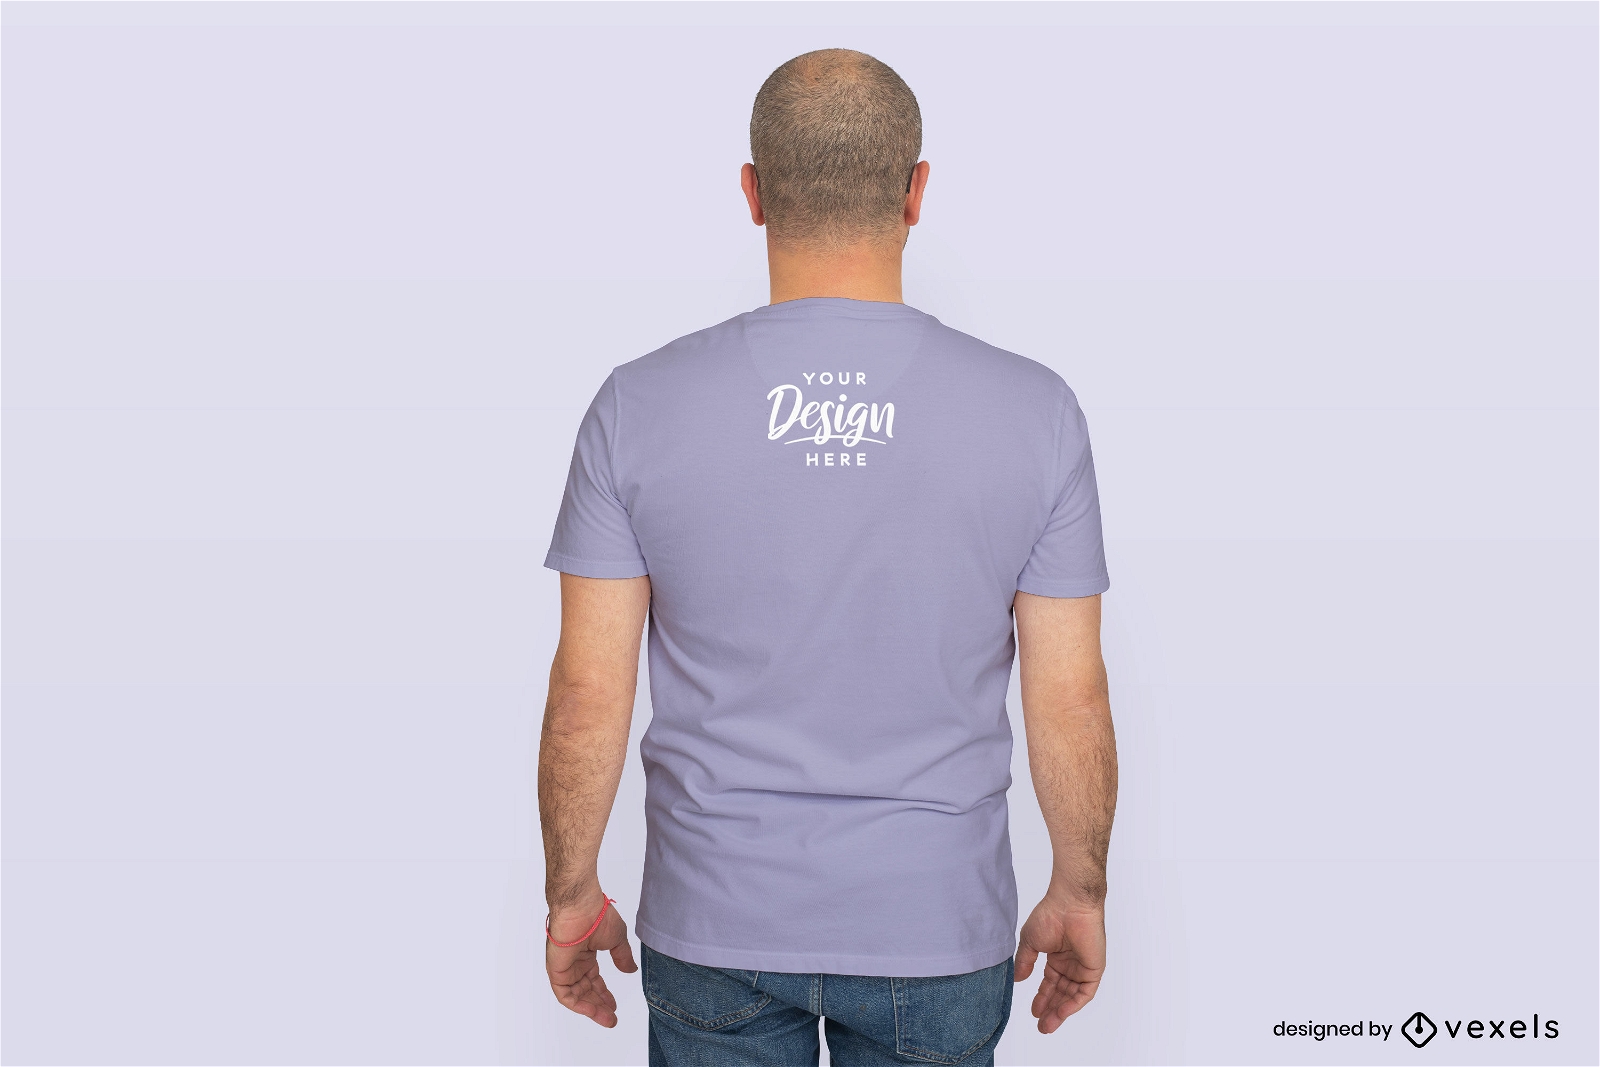 Diseño de maqueta de camiseta trasera de modelo masculino